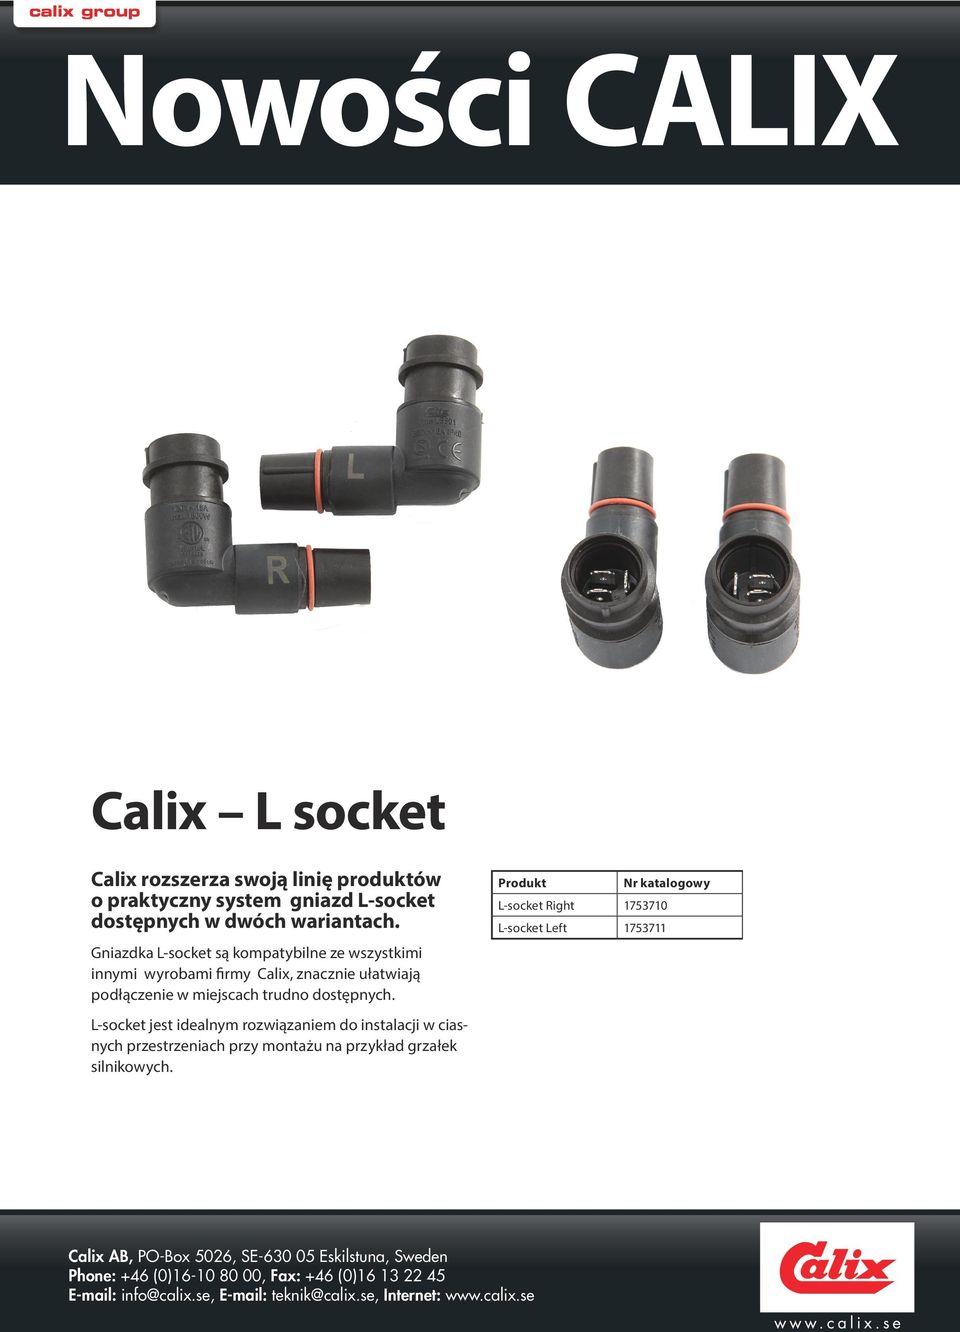 Gniazdka L-socket są kompatybilne ze wszystkimi innymi wyrobami firmy Calix, znacznie ułatwiają podłączenie w